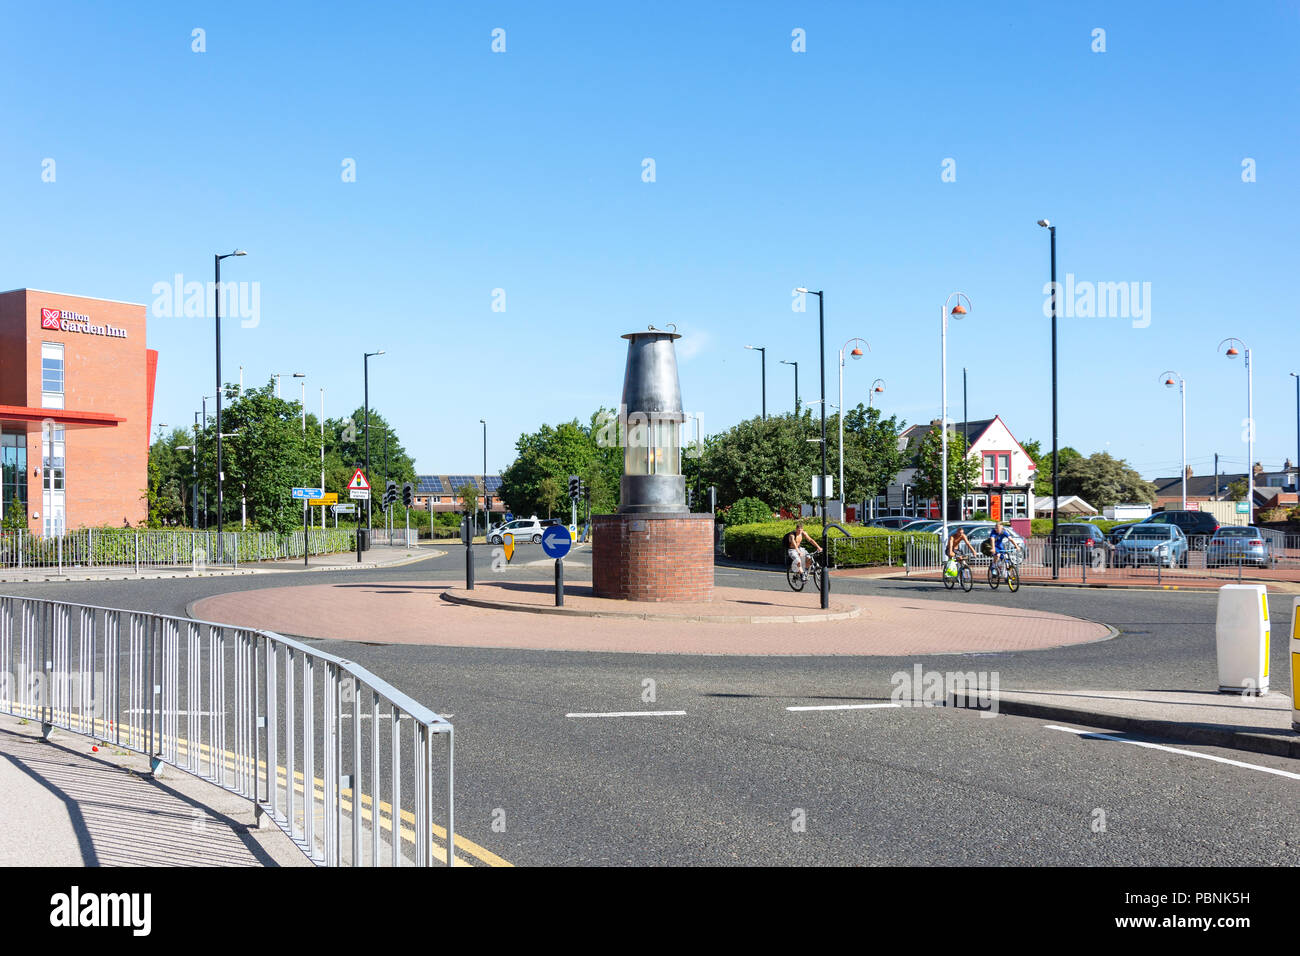 Miner's Lampe Kreisverkehr, Stadion, Schafställe, Sunderland, Tyne und Wear, England, Vereinigtes Königreich Stockfoto